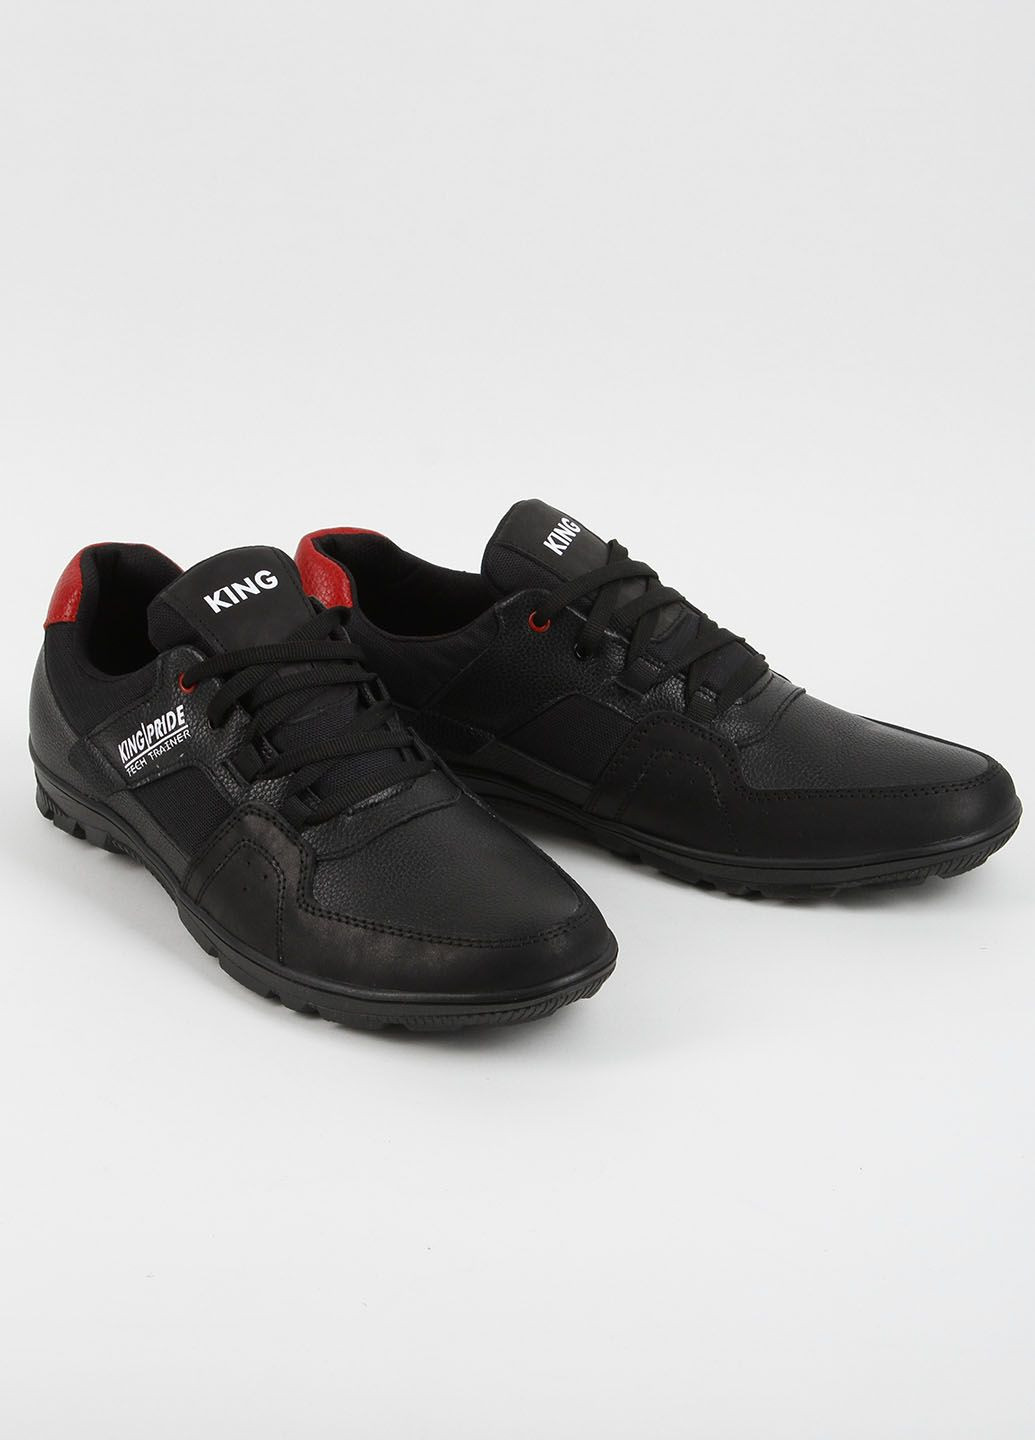 Черные кроссовки мужские кожаные 339611 Power